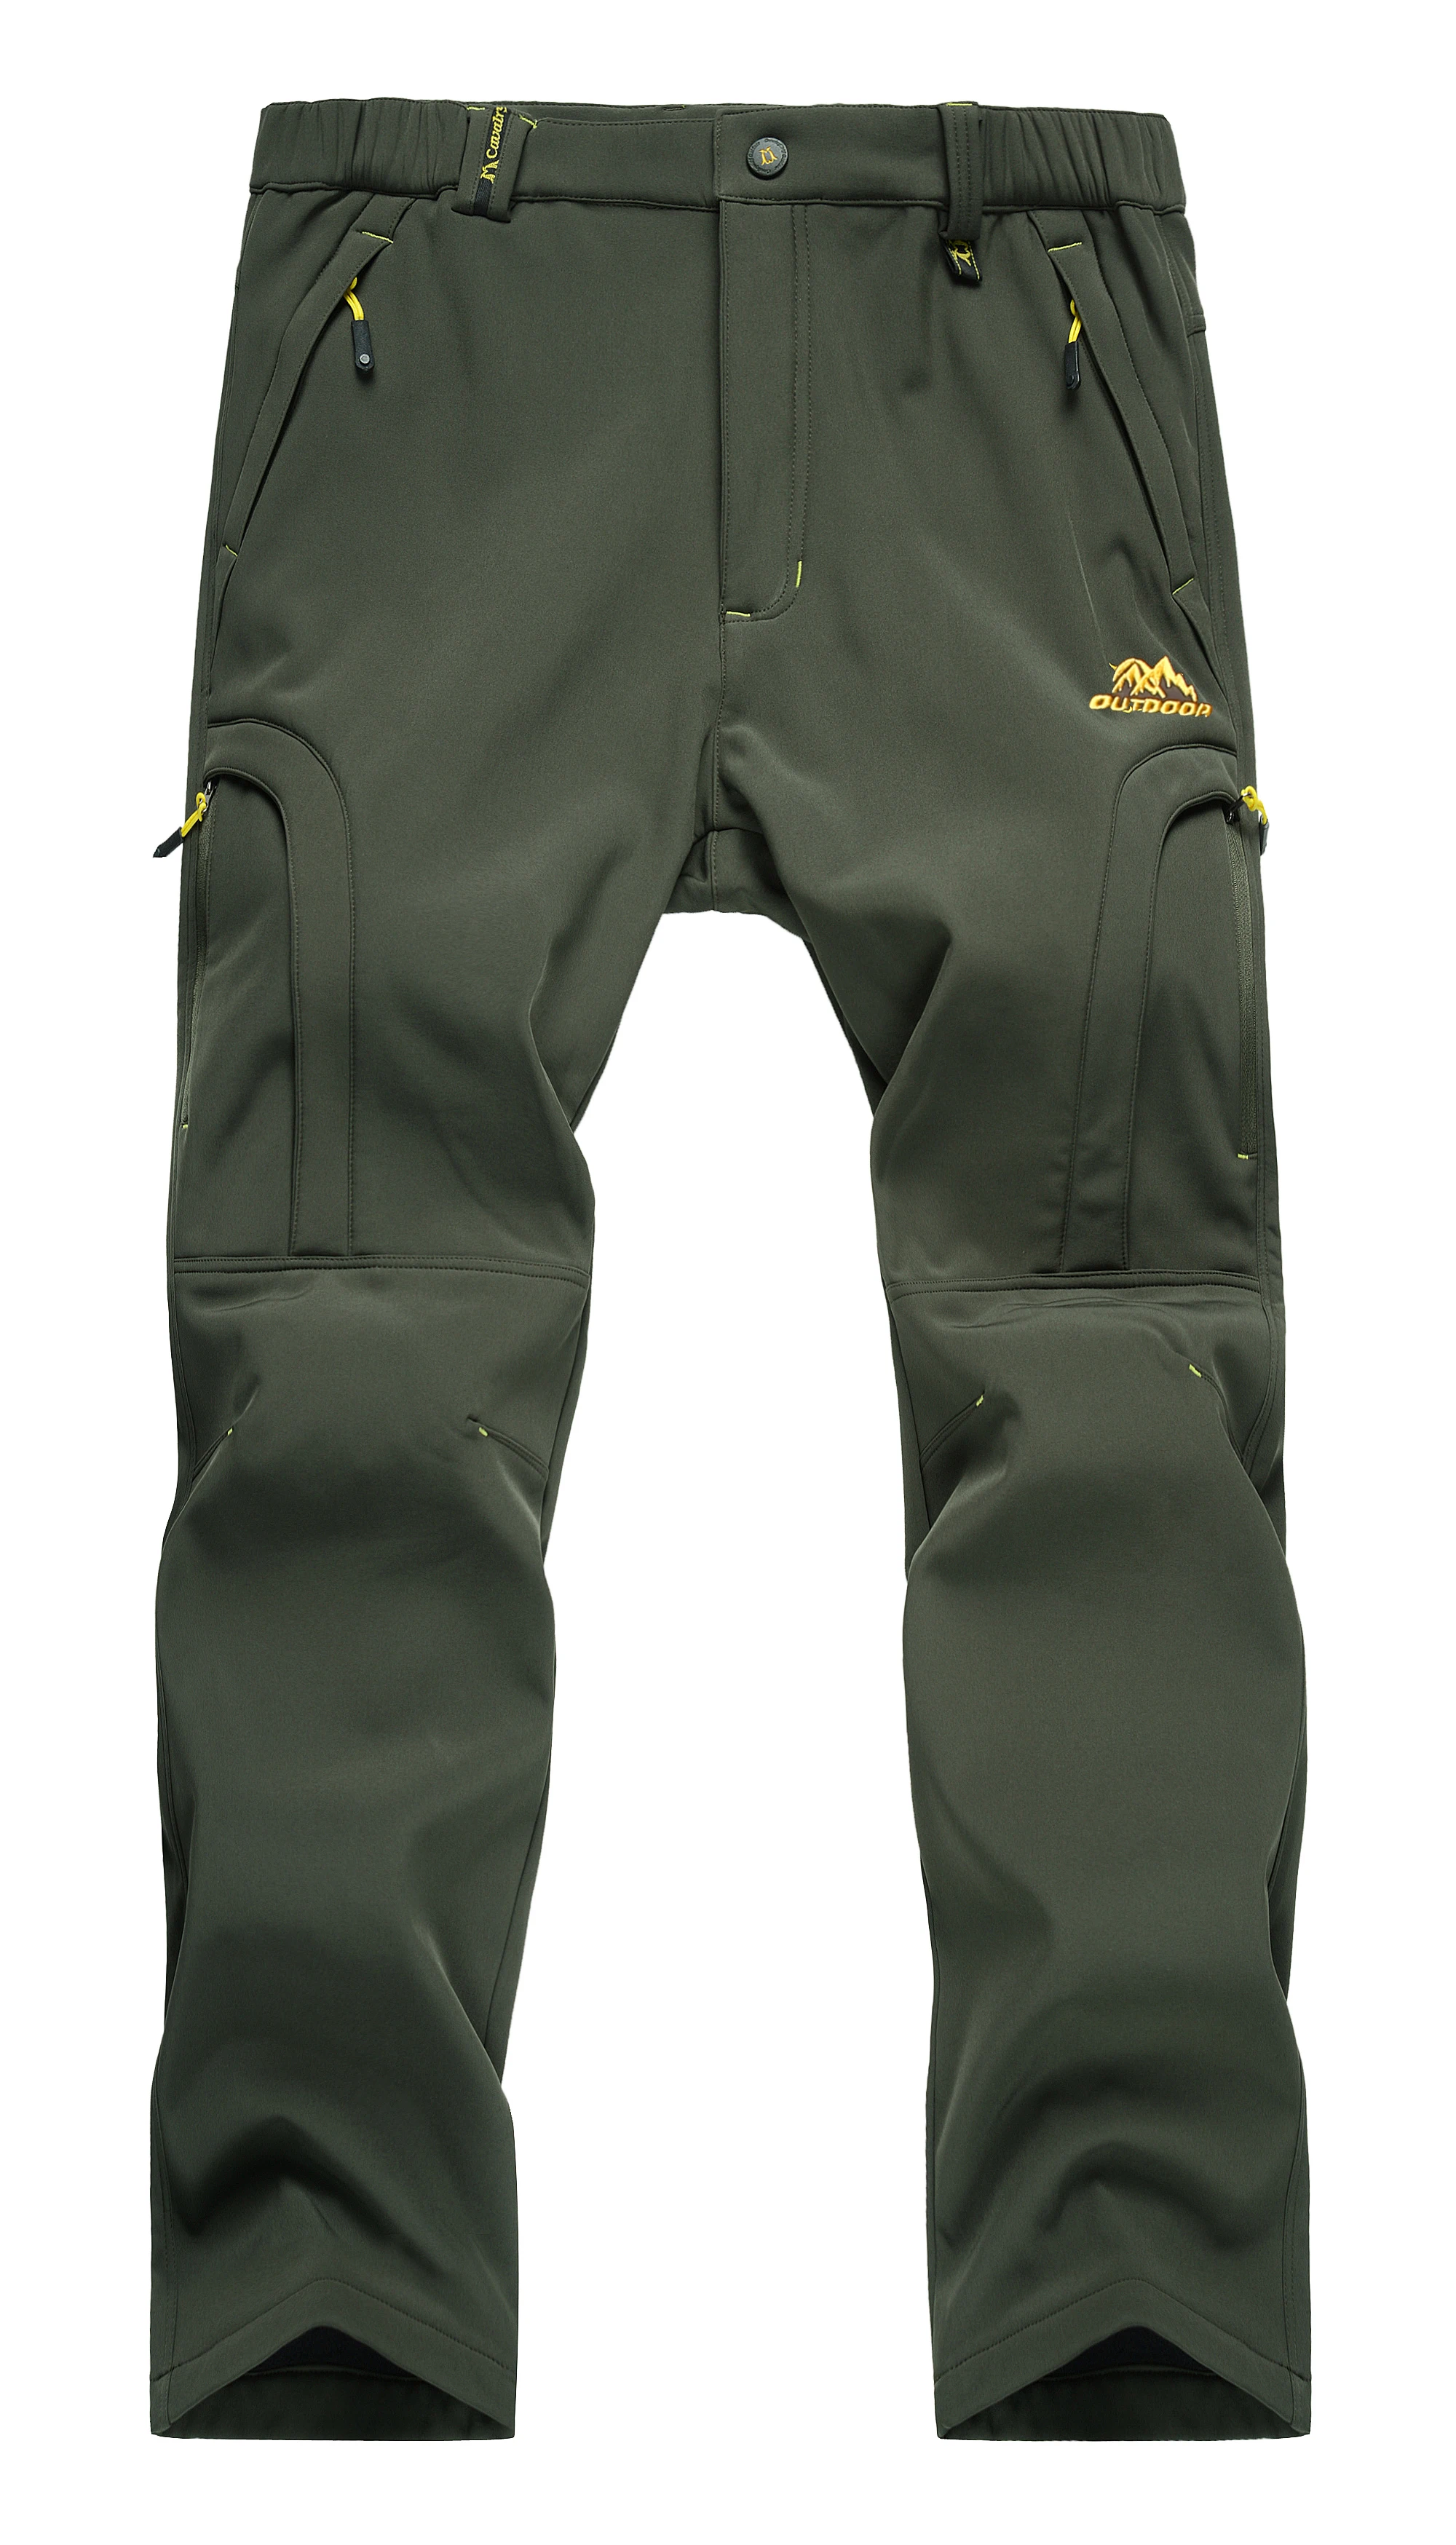  Мужские водонепроницаемые походные штаны На открытом воздухе Флисовая подкладка Зимние штаны для сноуборда Softshell